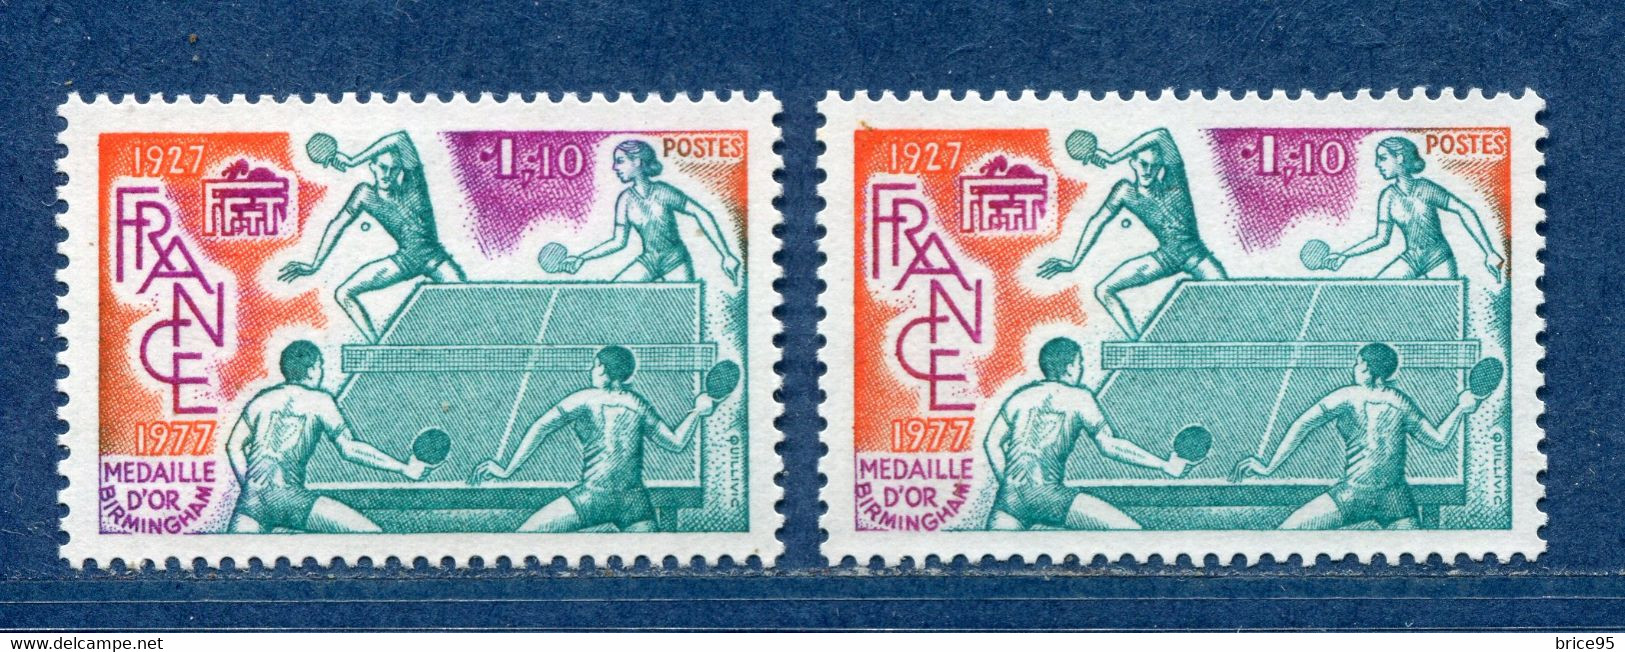 ⭐ France - Variété - YT N° 1961 - Couleurs - Pétouille - Neuf Sans Charnière - 1977 ⭐ - Nuovi